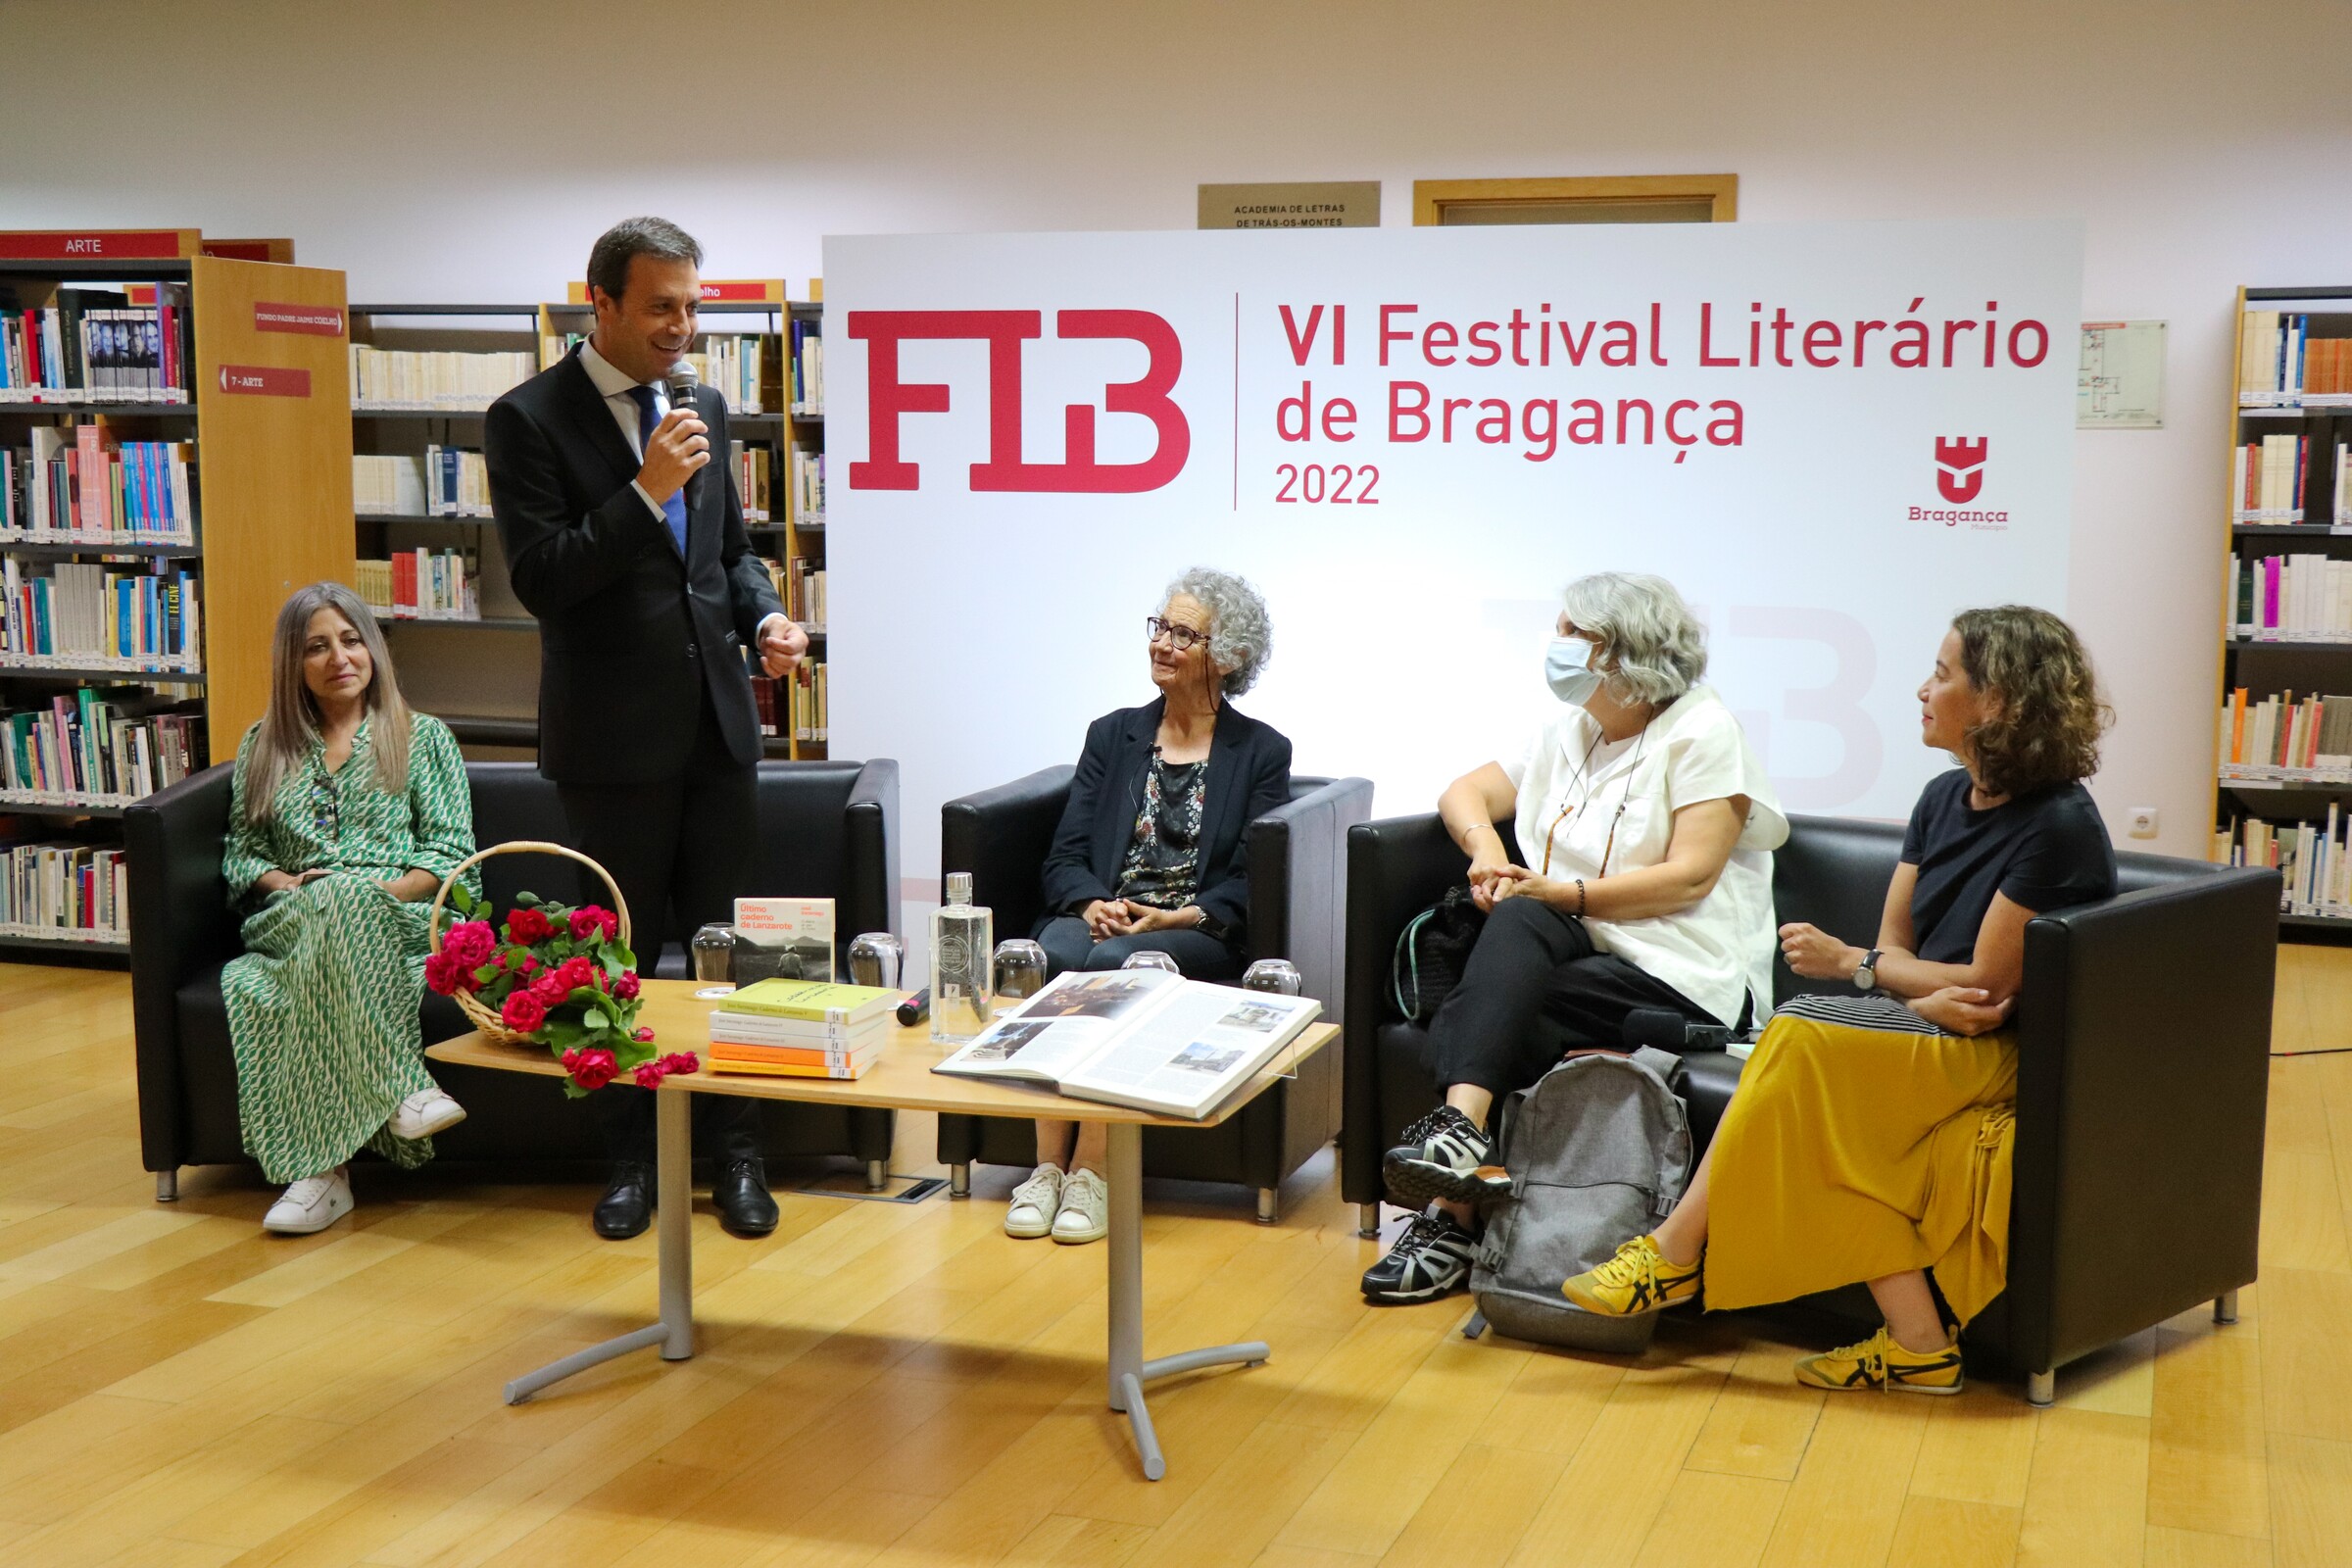 VI Festival Literário de Bragança | 1.º Dia